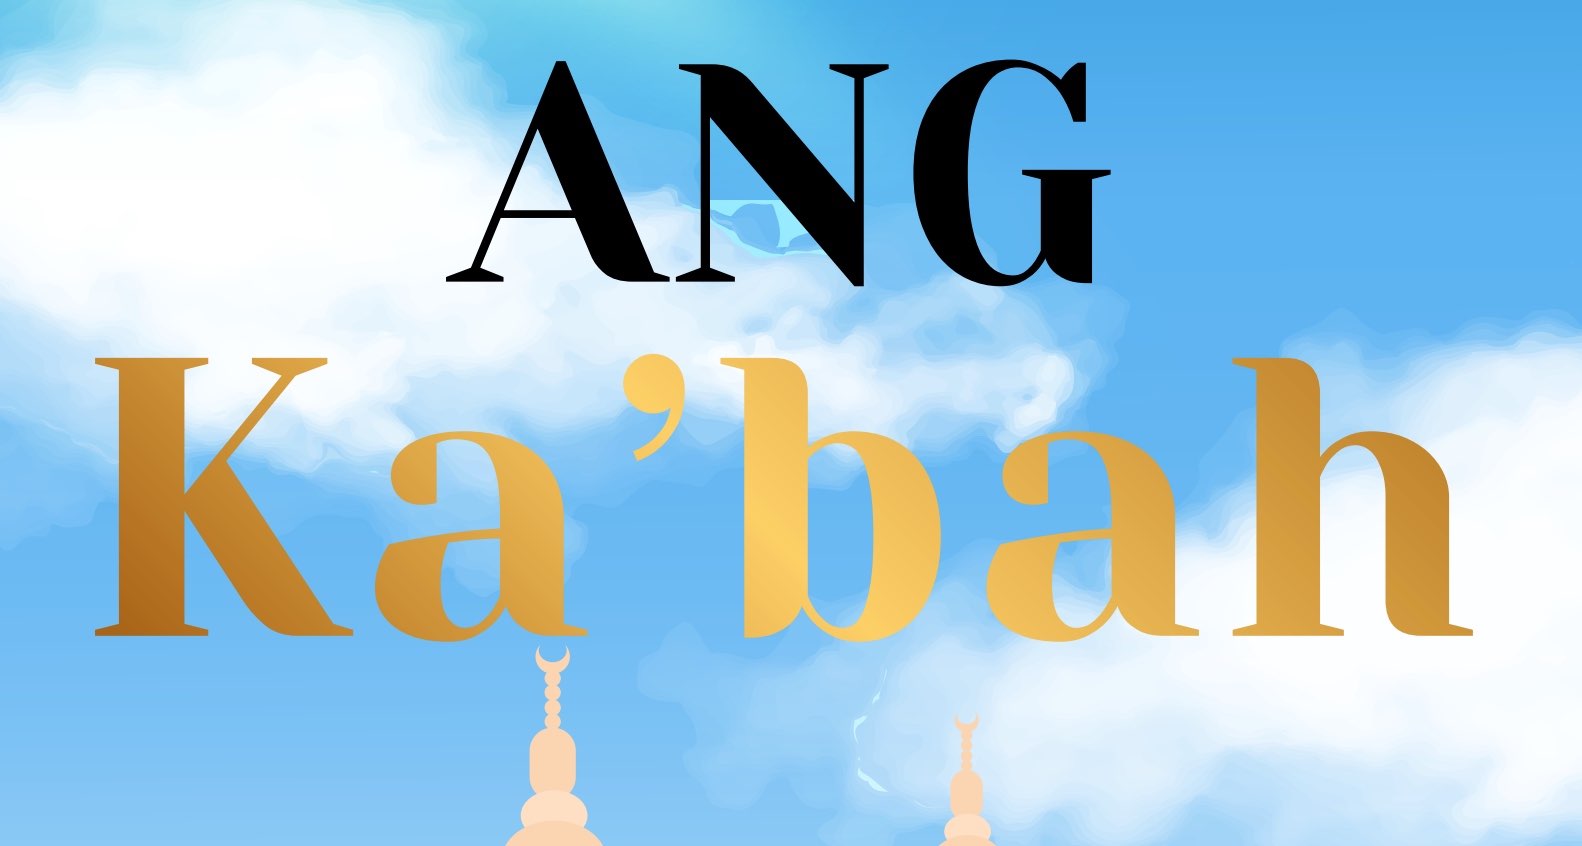 Ang Ka’bah